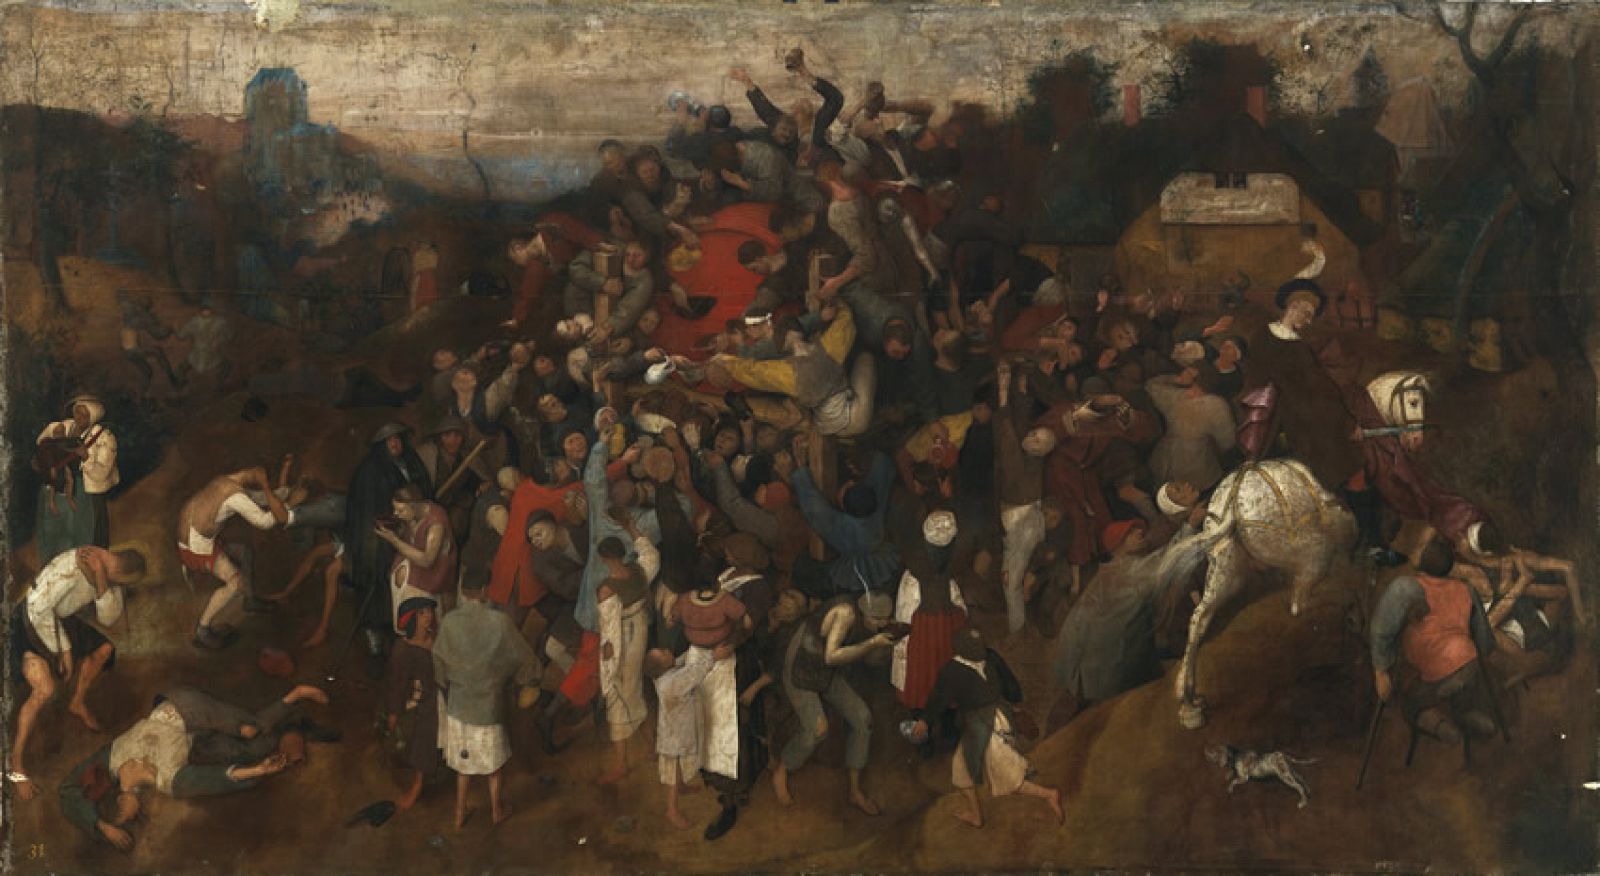 El vino de la fiesta de San Martín-Pieter Bruegel el Viejo-Madrid, Museo Nacional del Prado